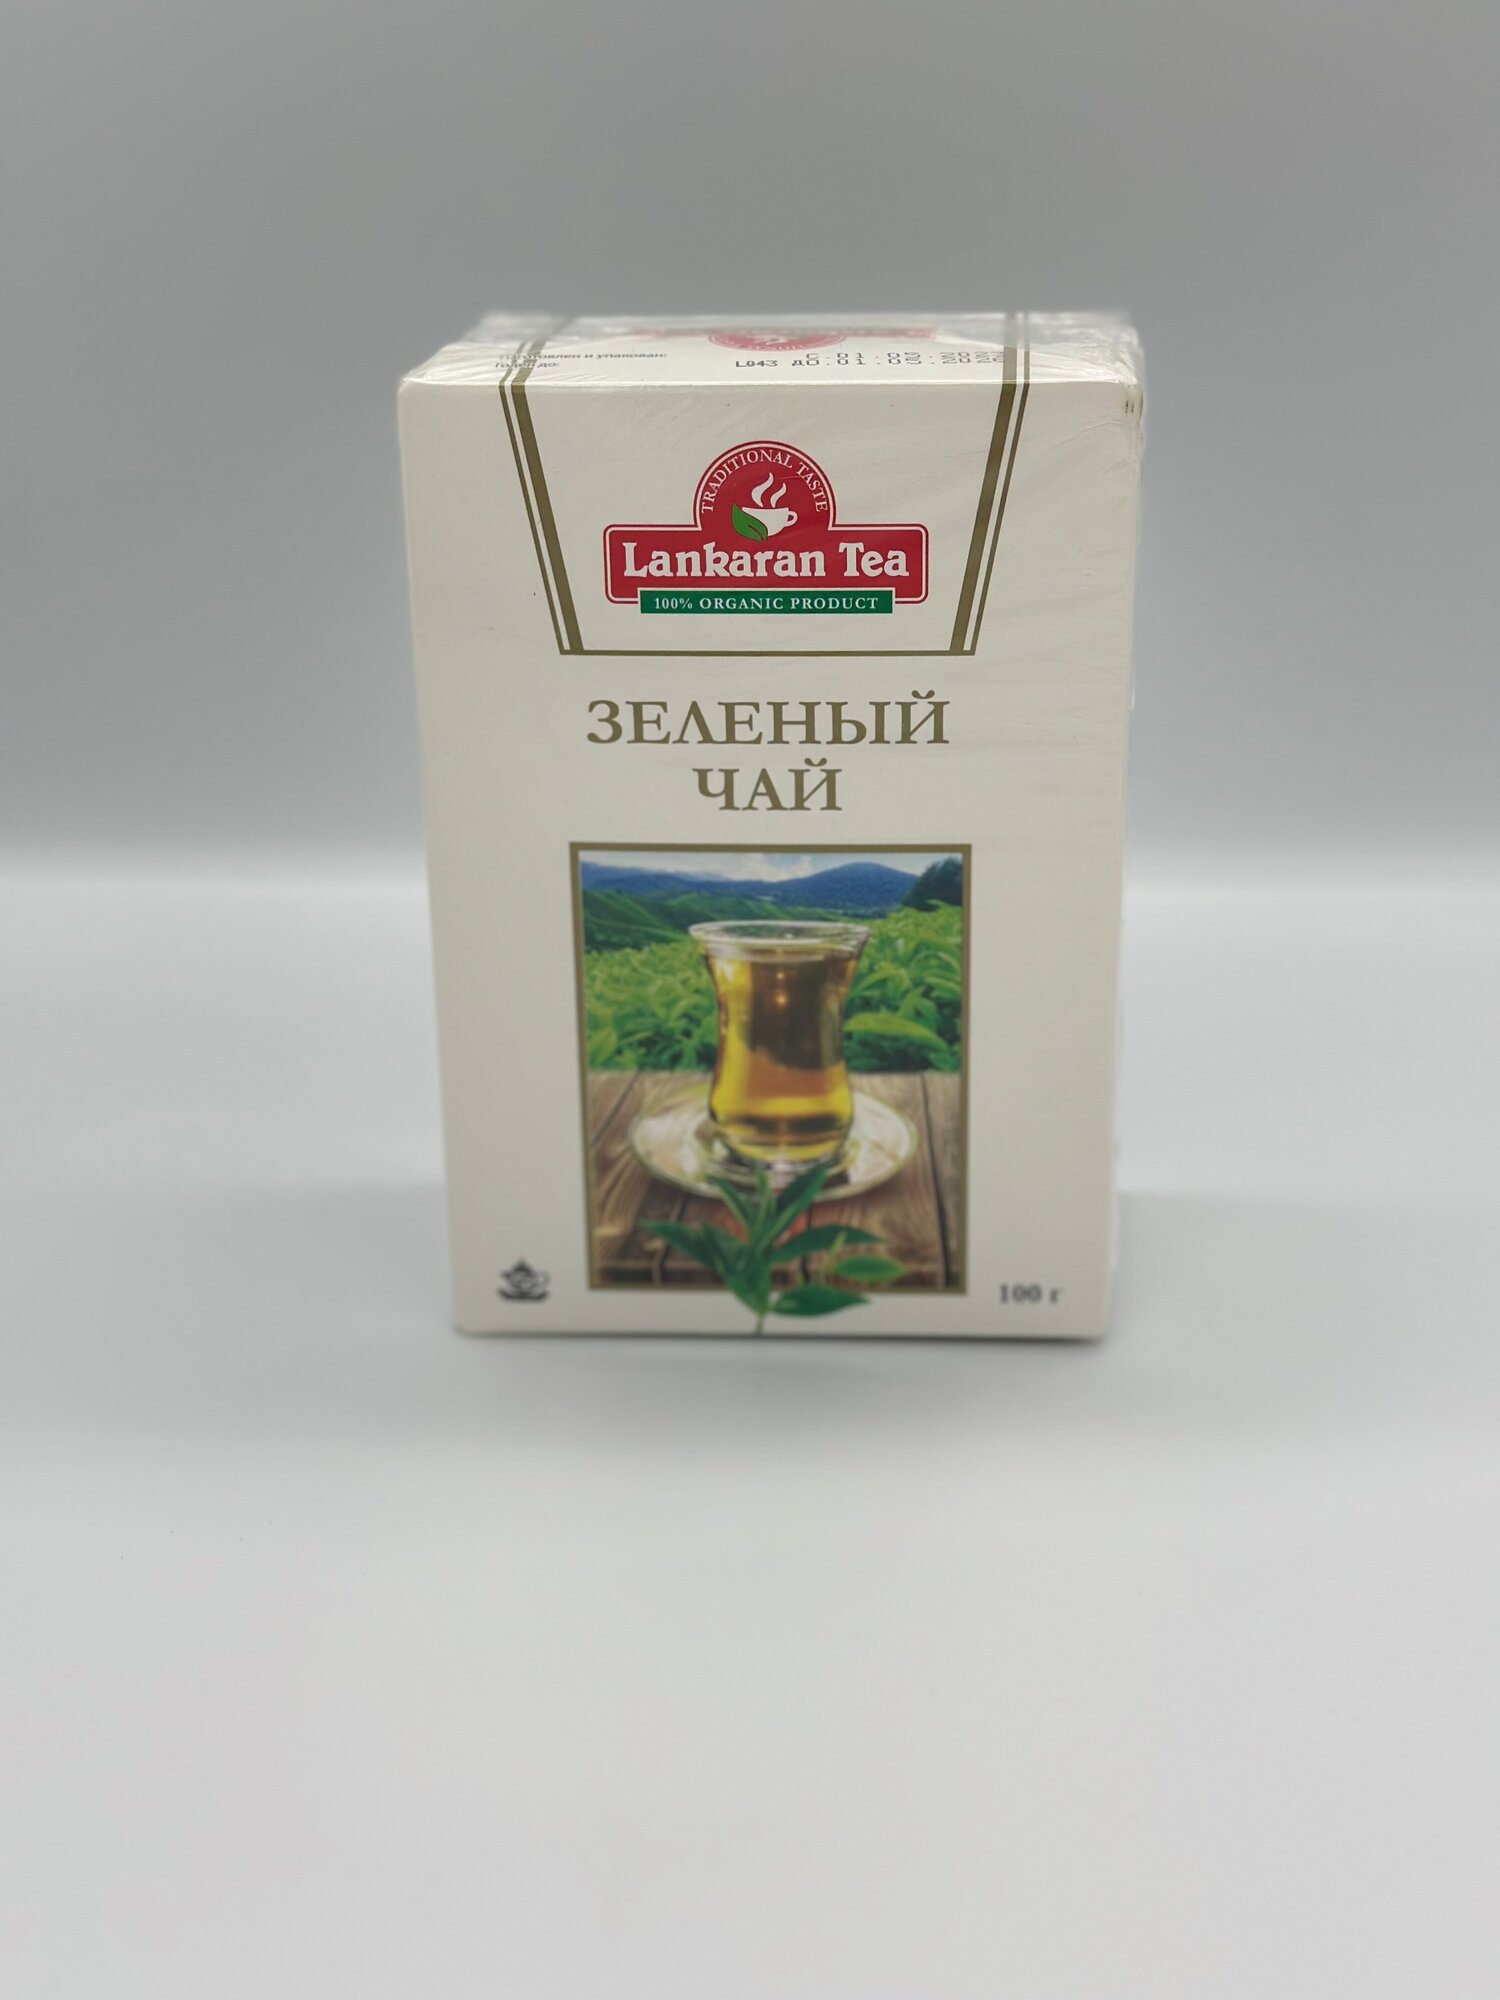 Зеленый чай "Lankaran tea", (Ленкорань, Азербайджан) 100 г.